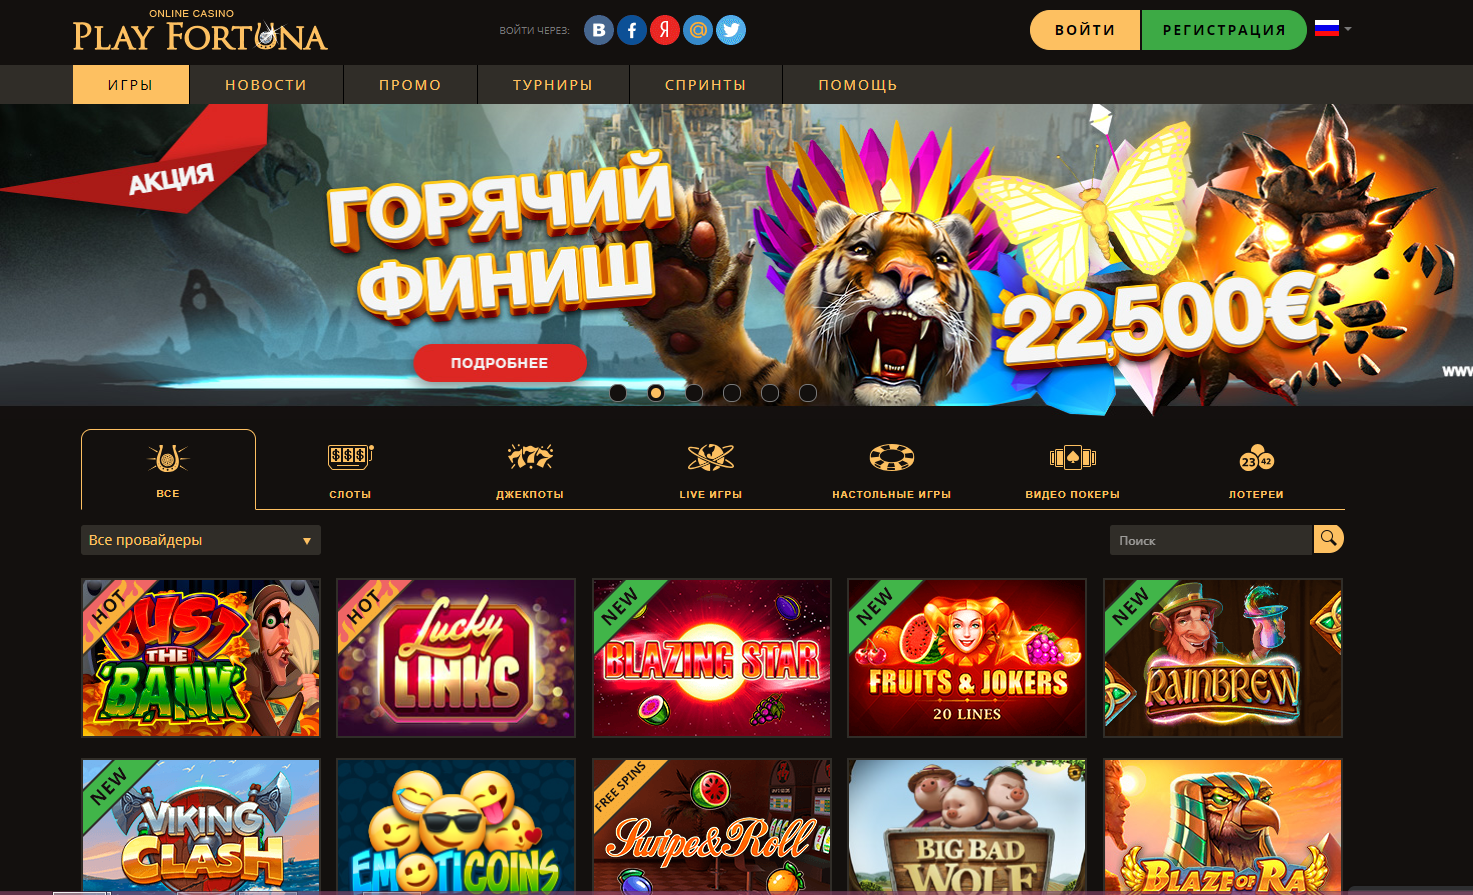 Fortuna casino online шикарным казино мафиозные боссы уверены асс обязательно справится